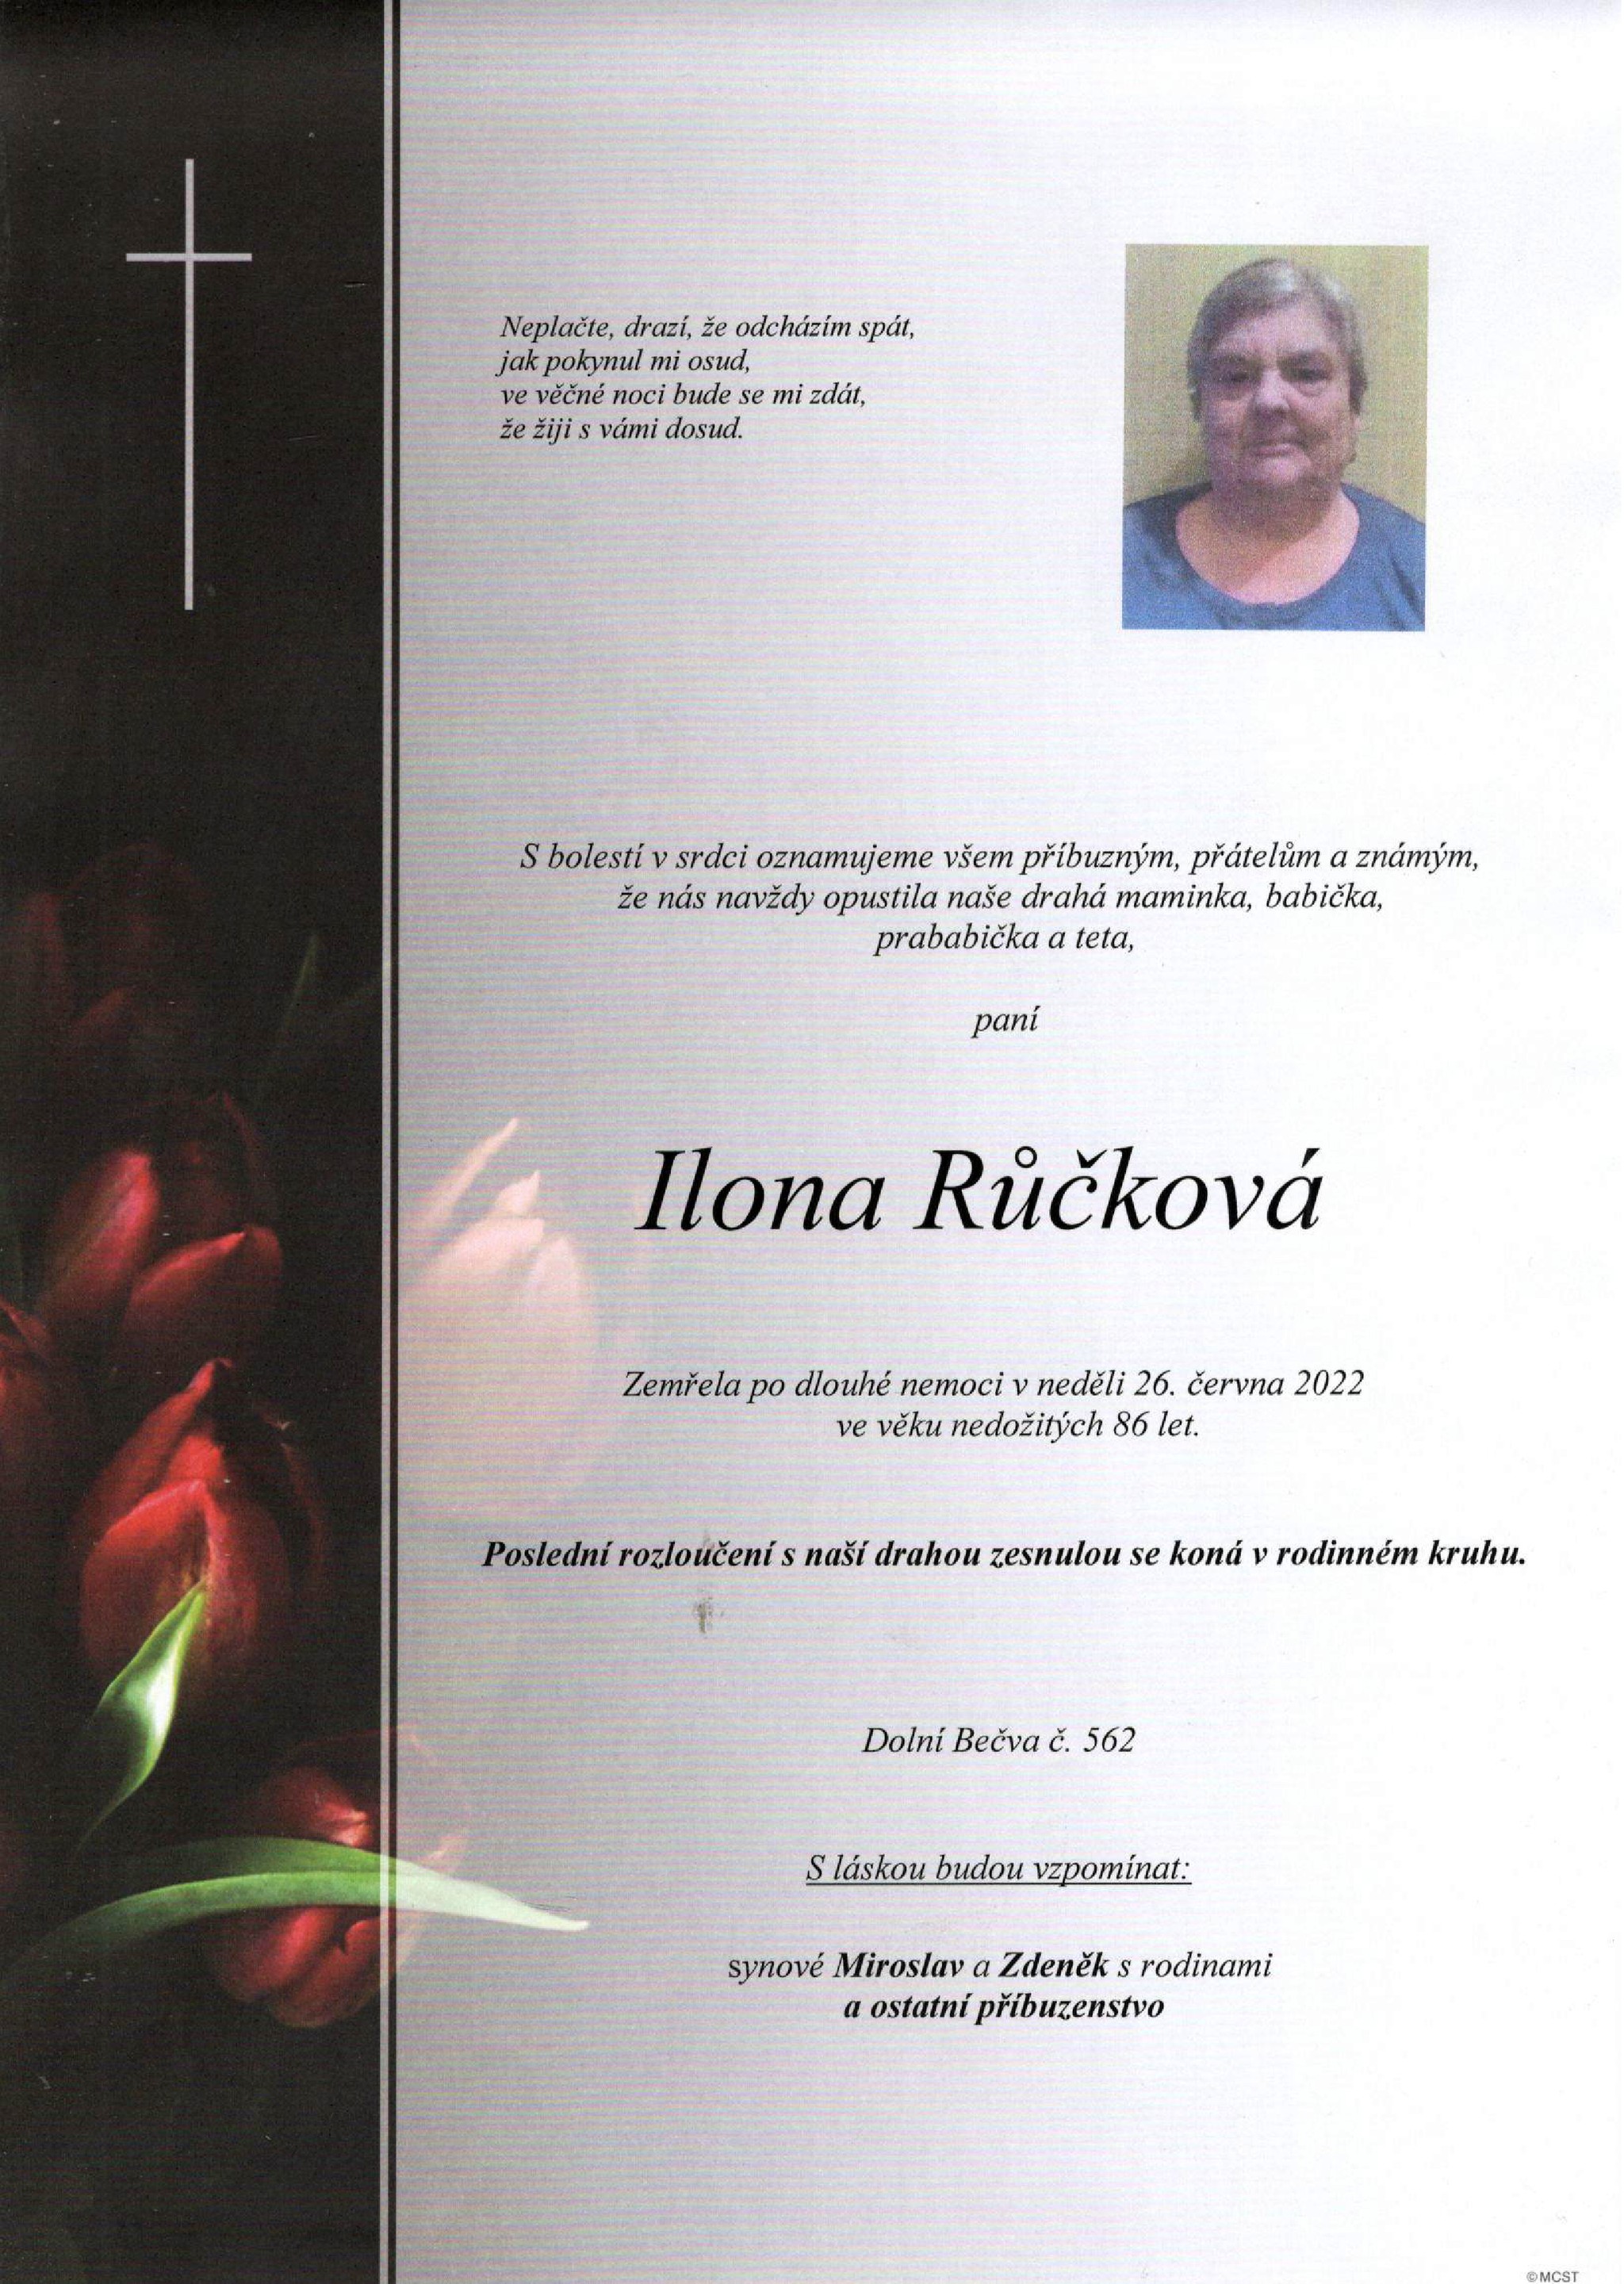 Ilona Růčková